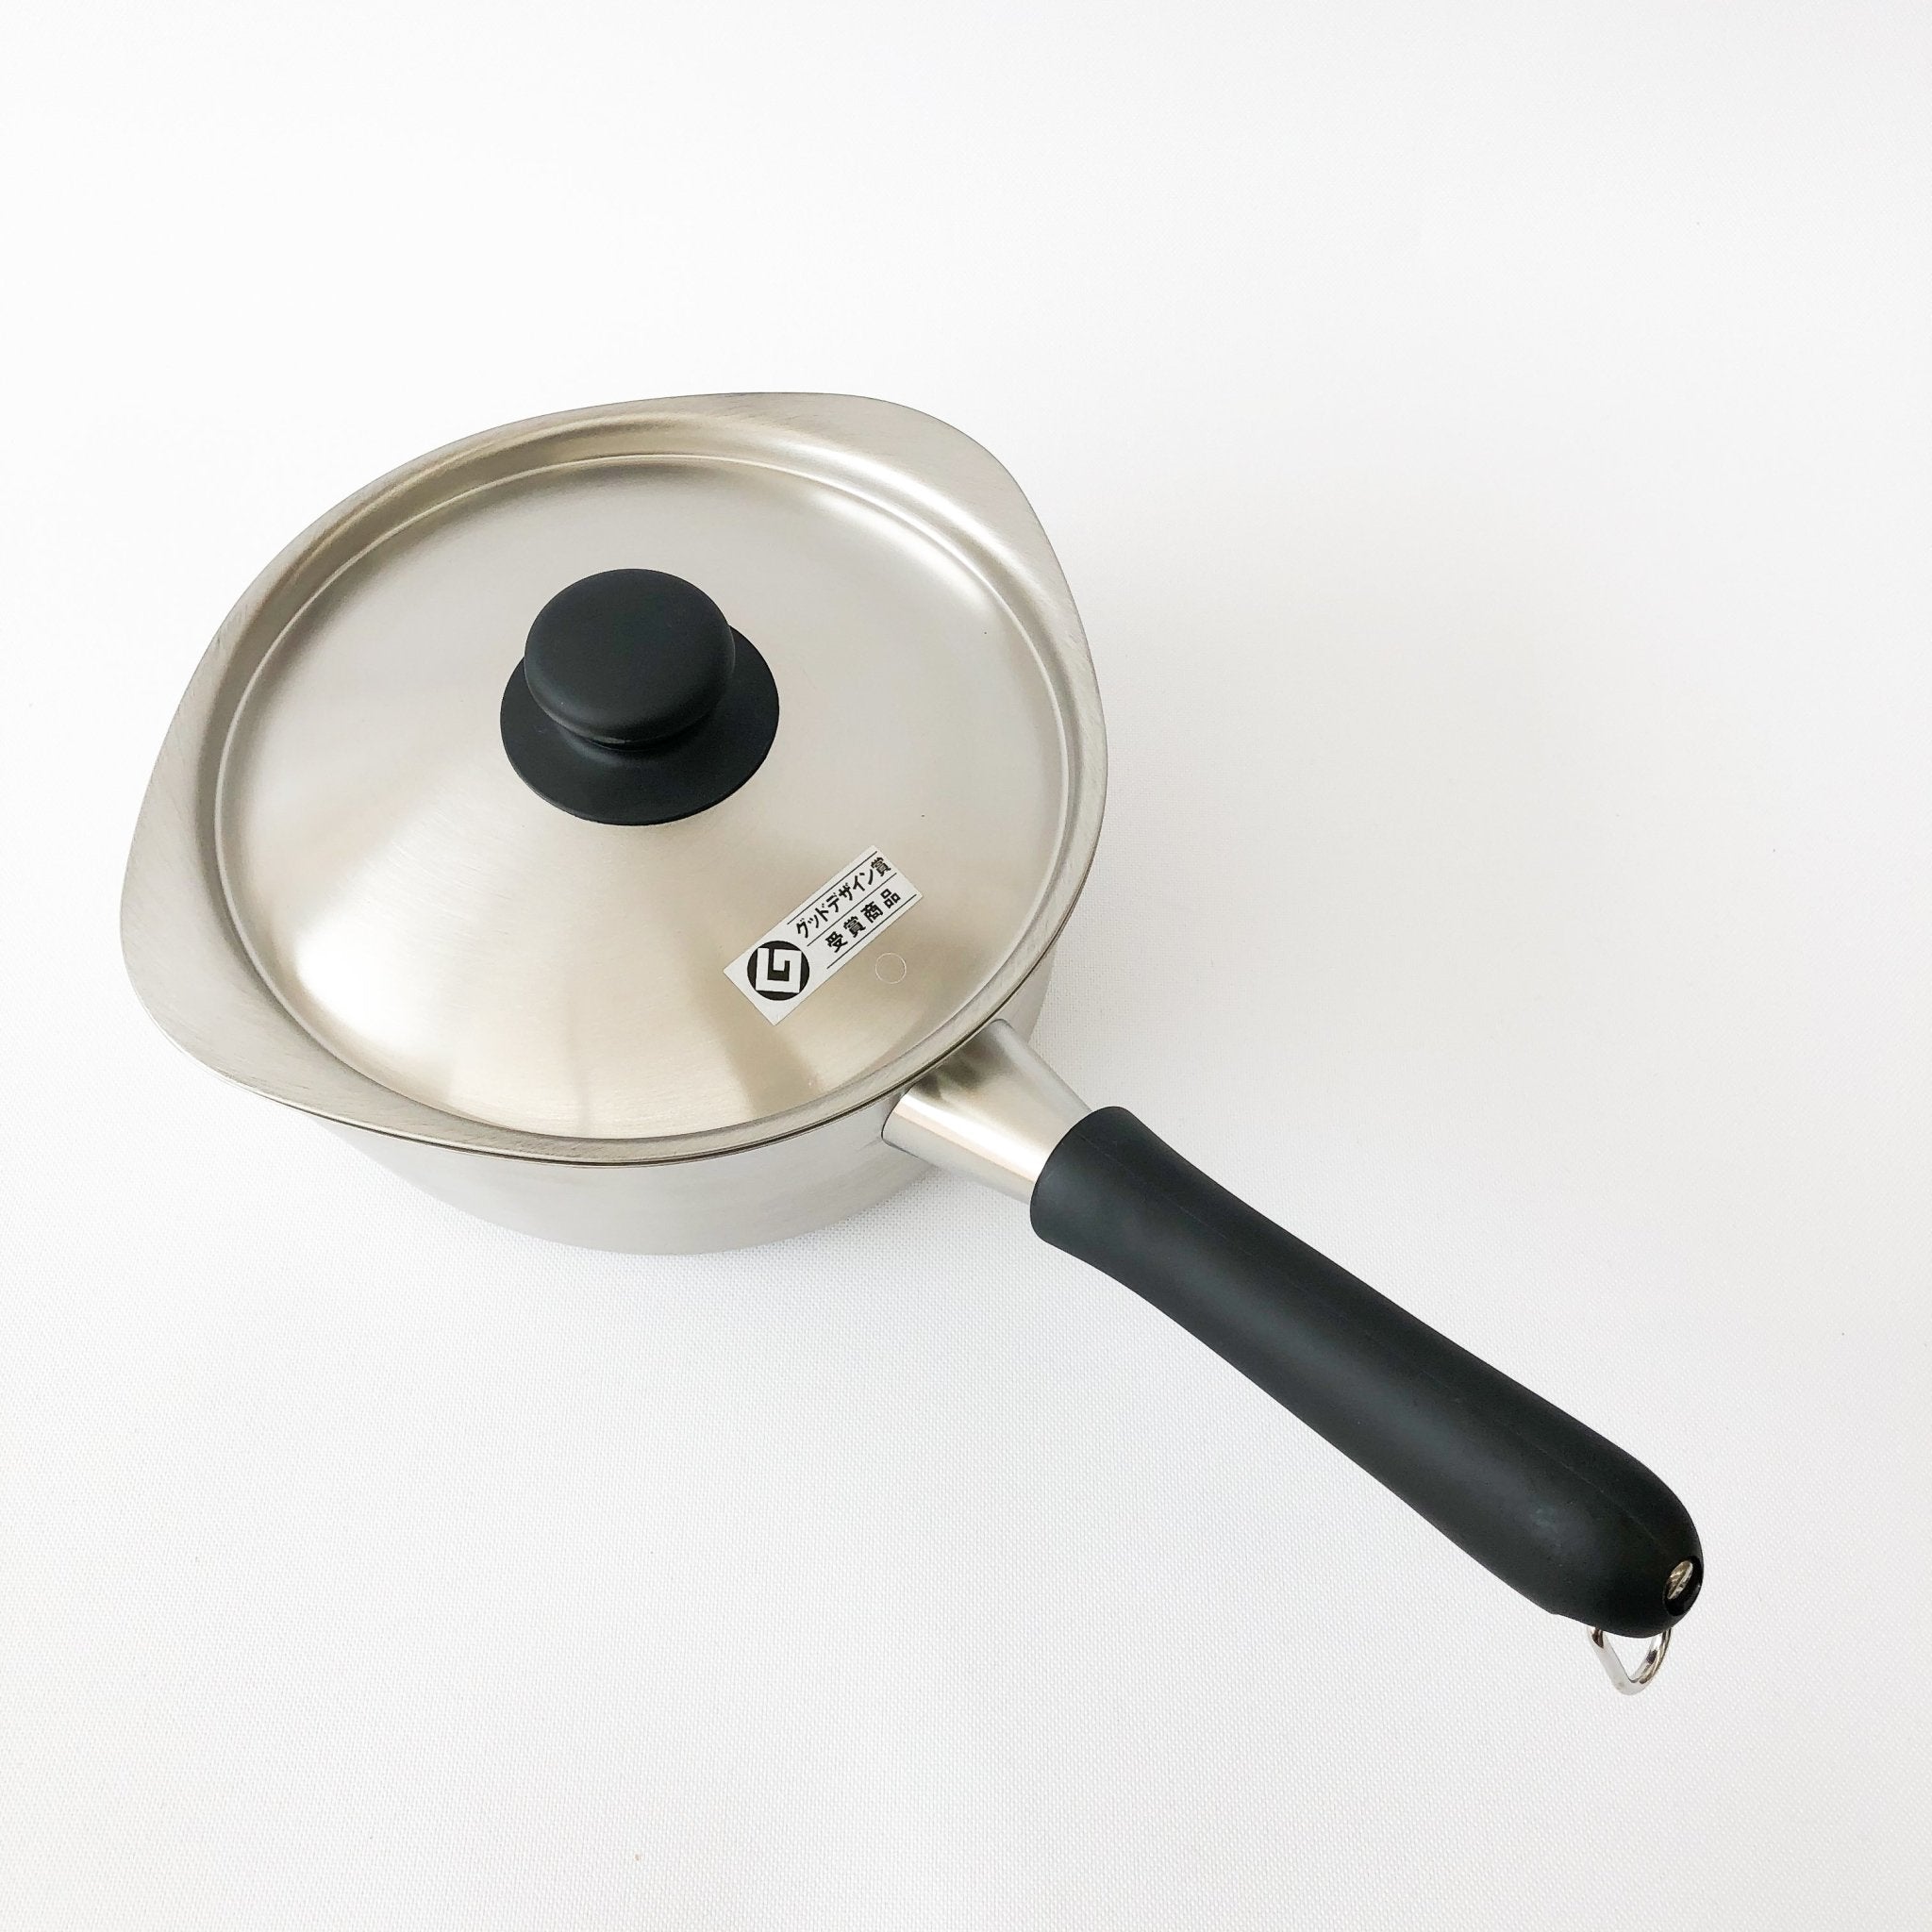 Pour Spout Milk Pan Wood Handle Non Stick Cooking Pot Kitchen With